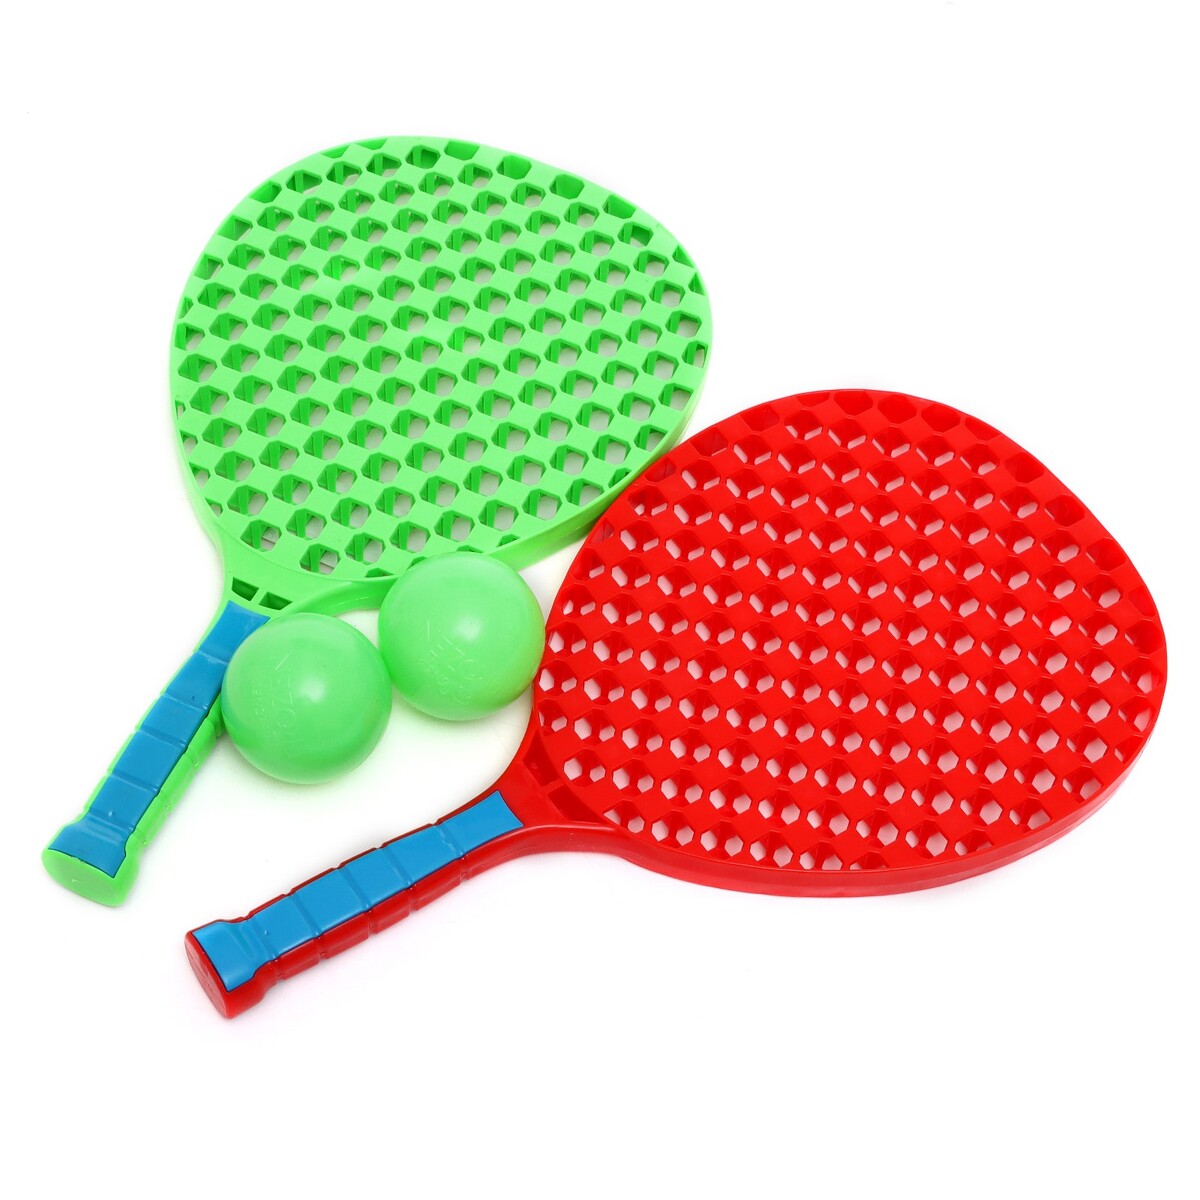 Игровой набор набор настольный теннис детский оранжево зеленый в ассортименте